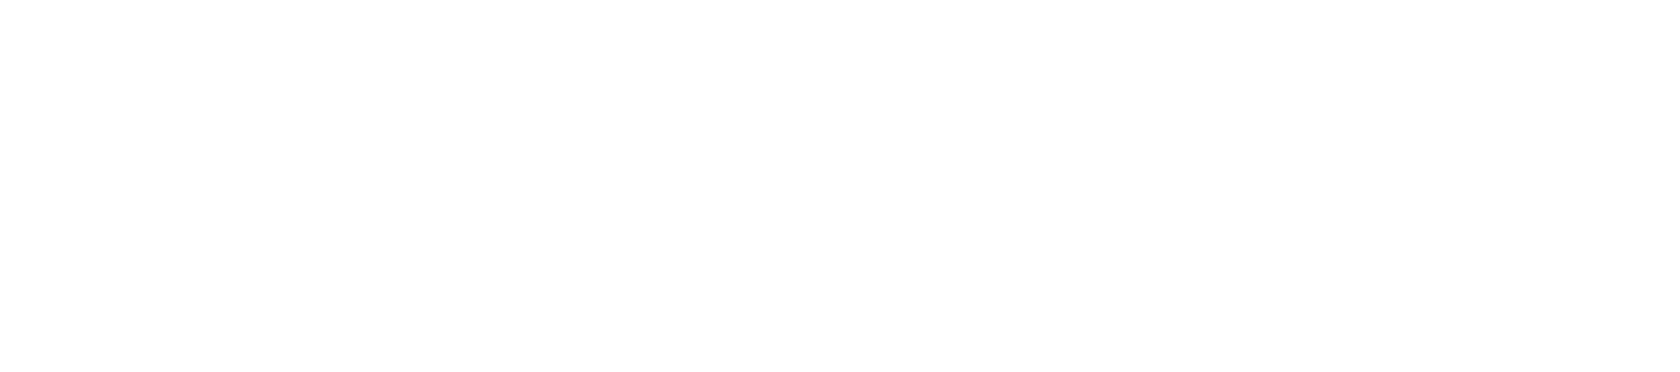 СДЭК логотип белый